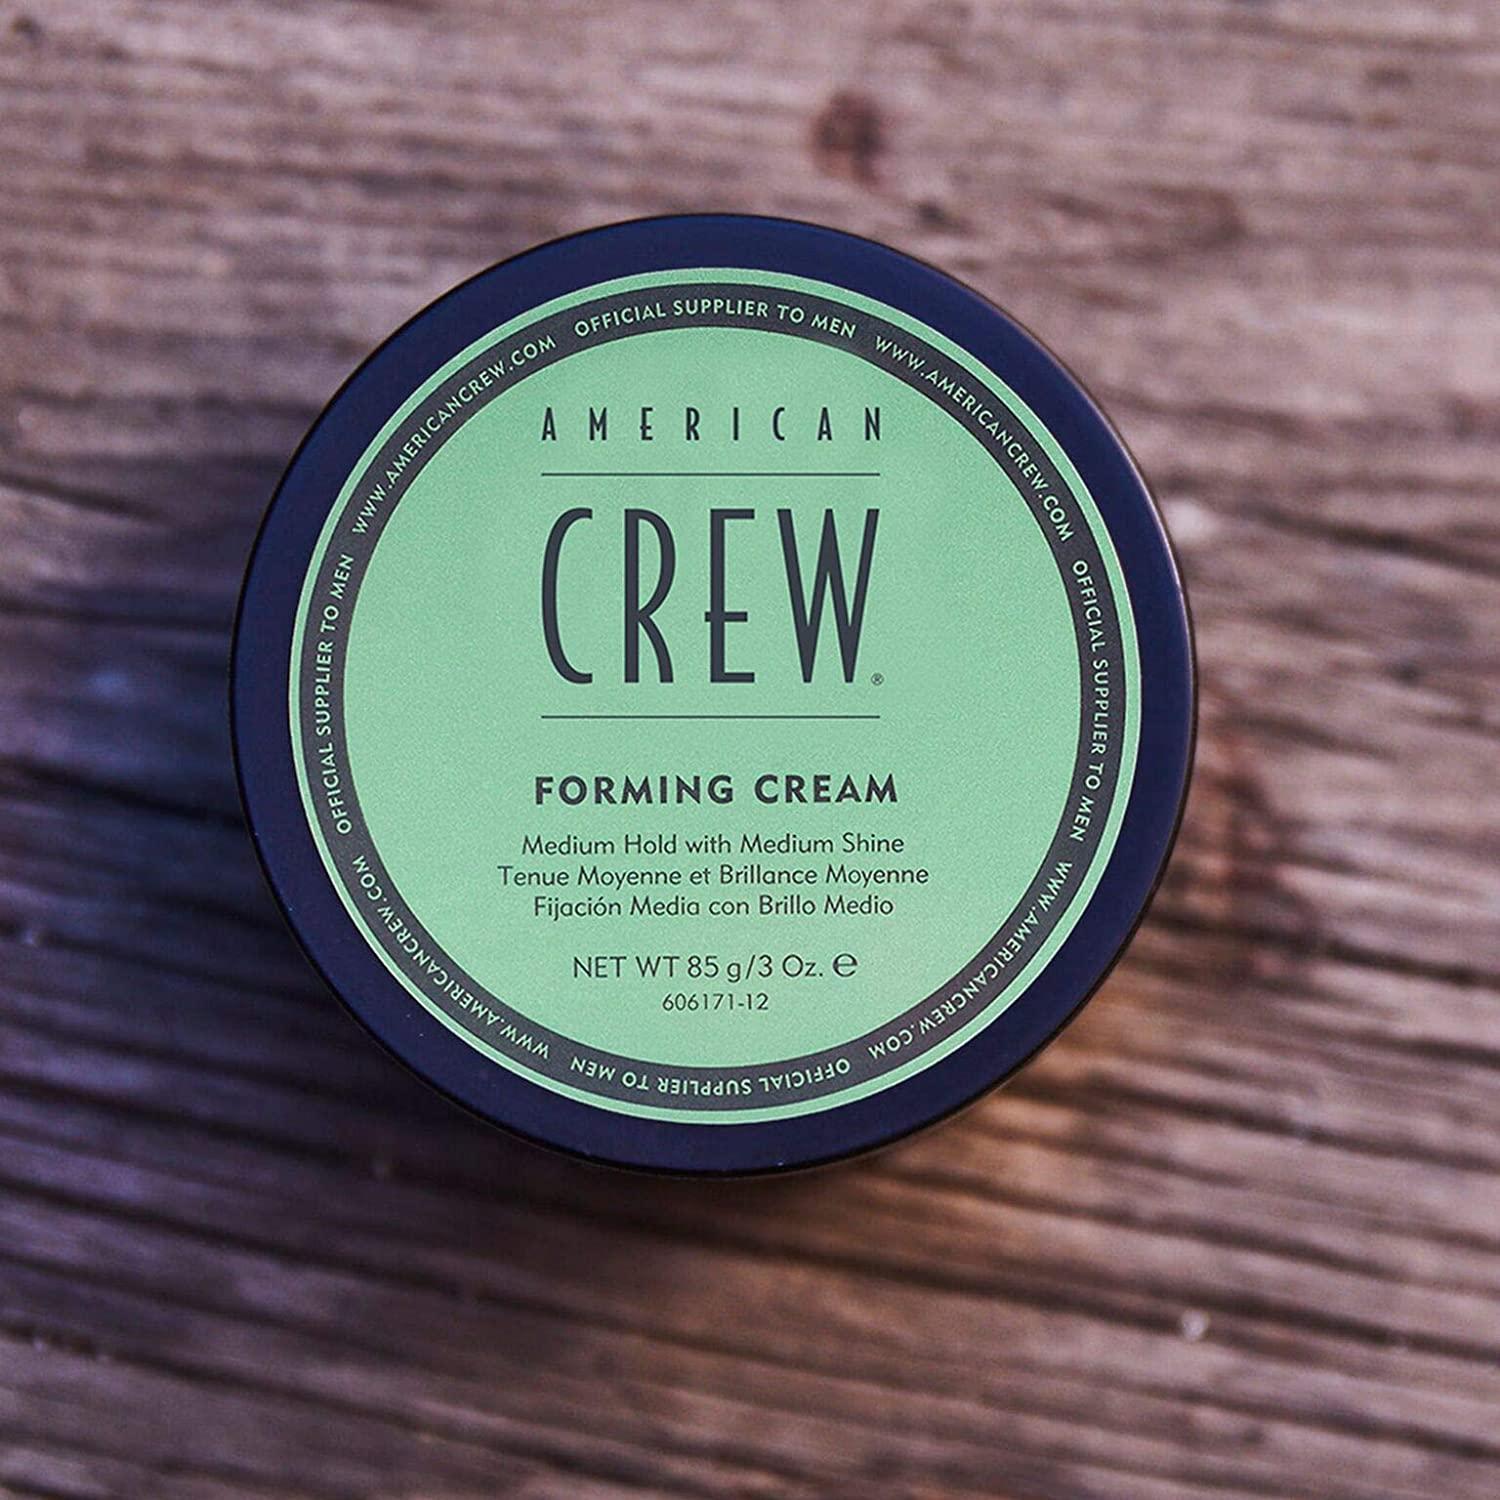 American Crew Forming Cream Medium Hold with Medium Shine